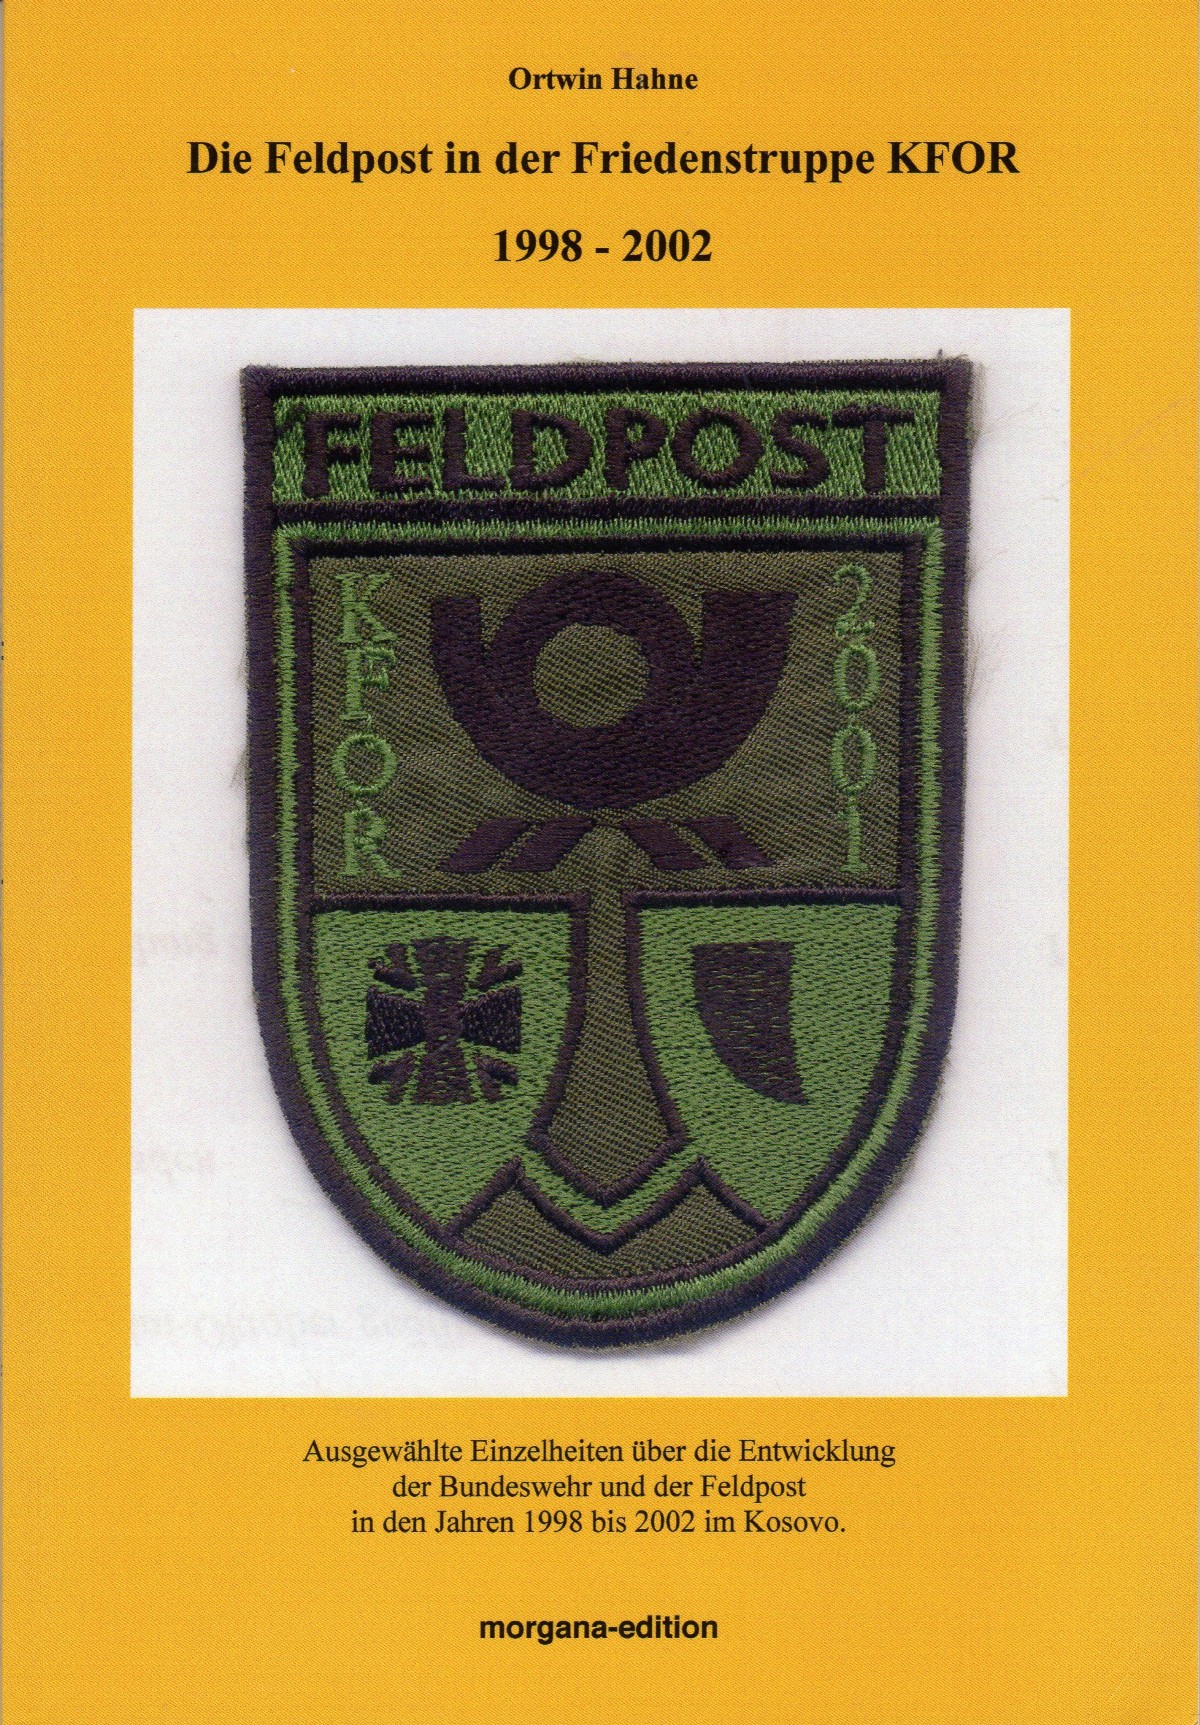 Die Feldpost in der Friedenstruppe KFOR 1998 - 2002, Ottwin Hahne